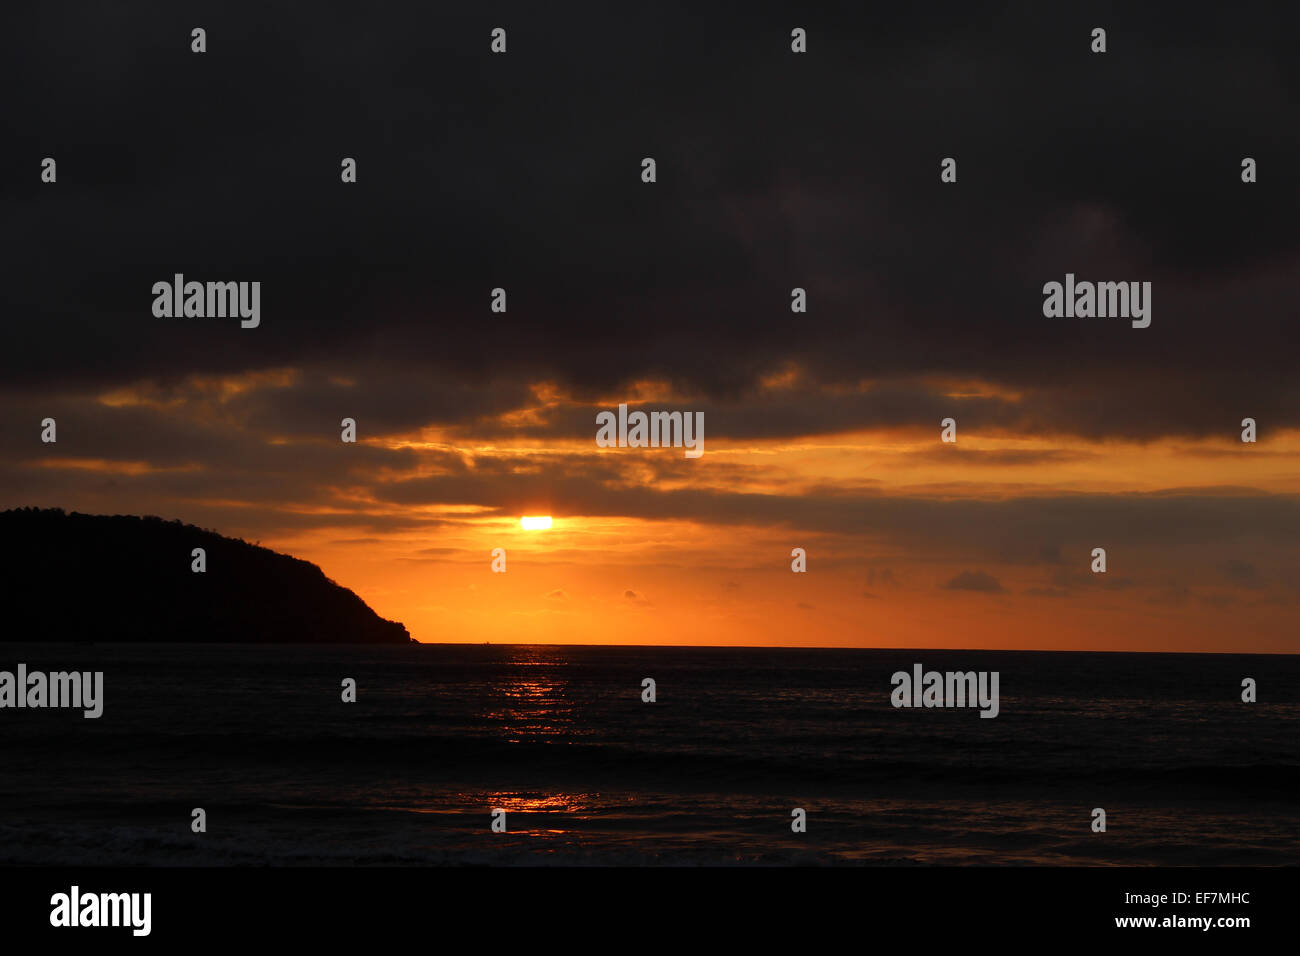 A sunset over the Pacific Ocean in Puerto Lopez, Ecuador Stock Photo